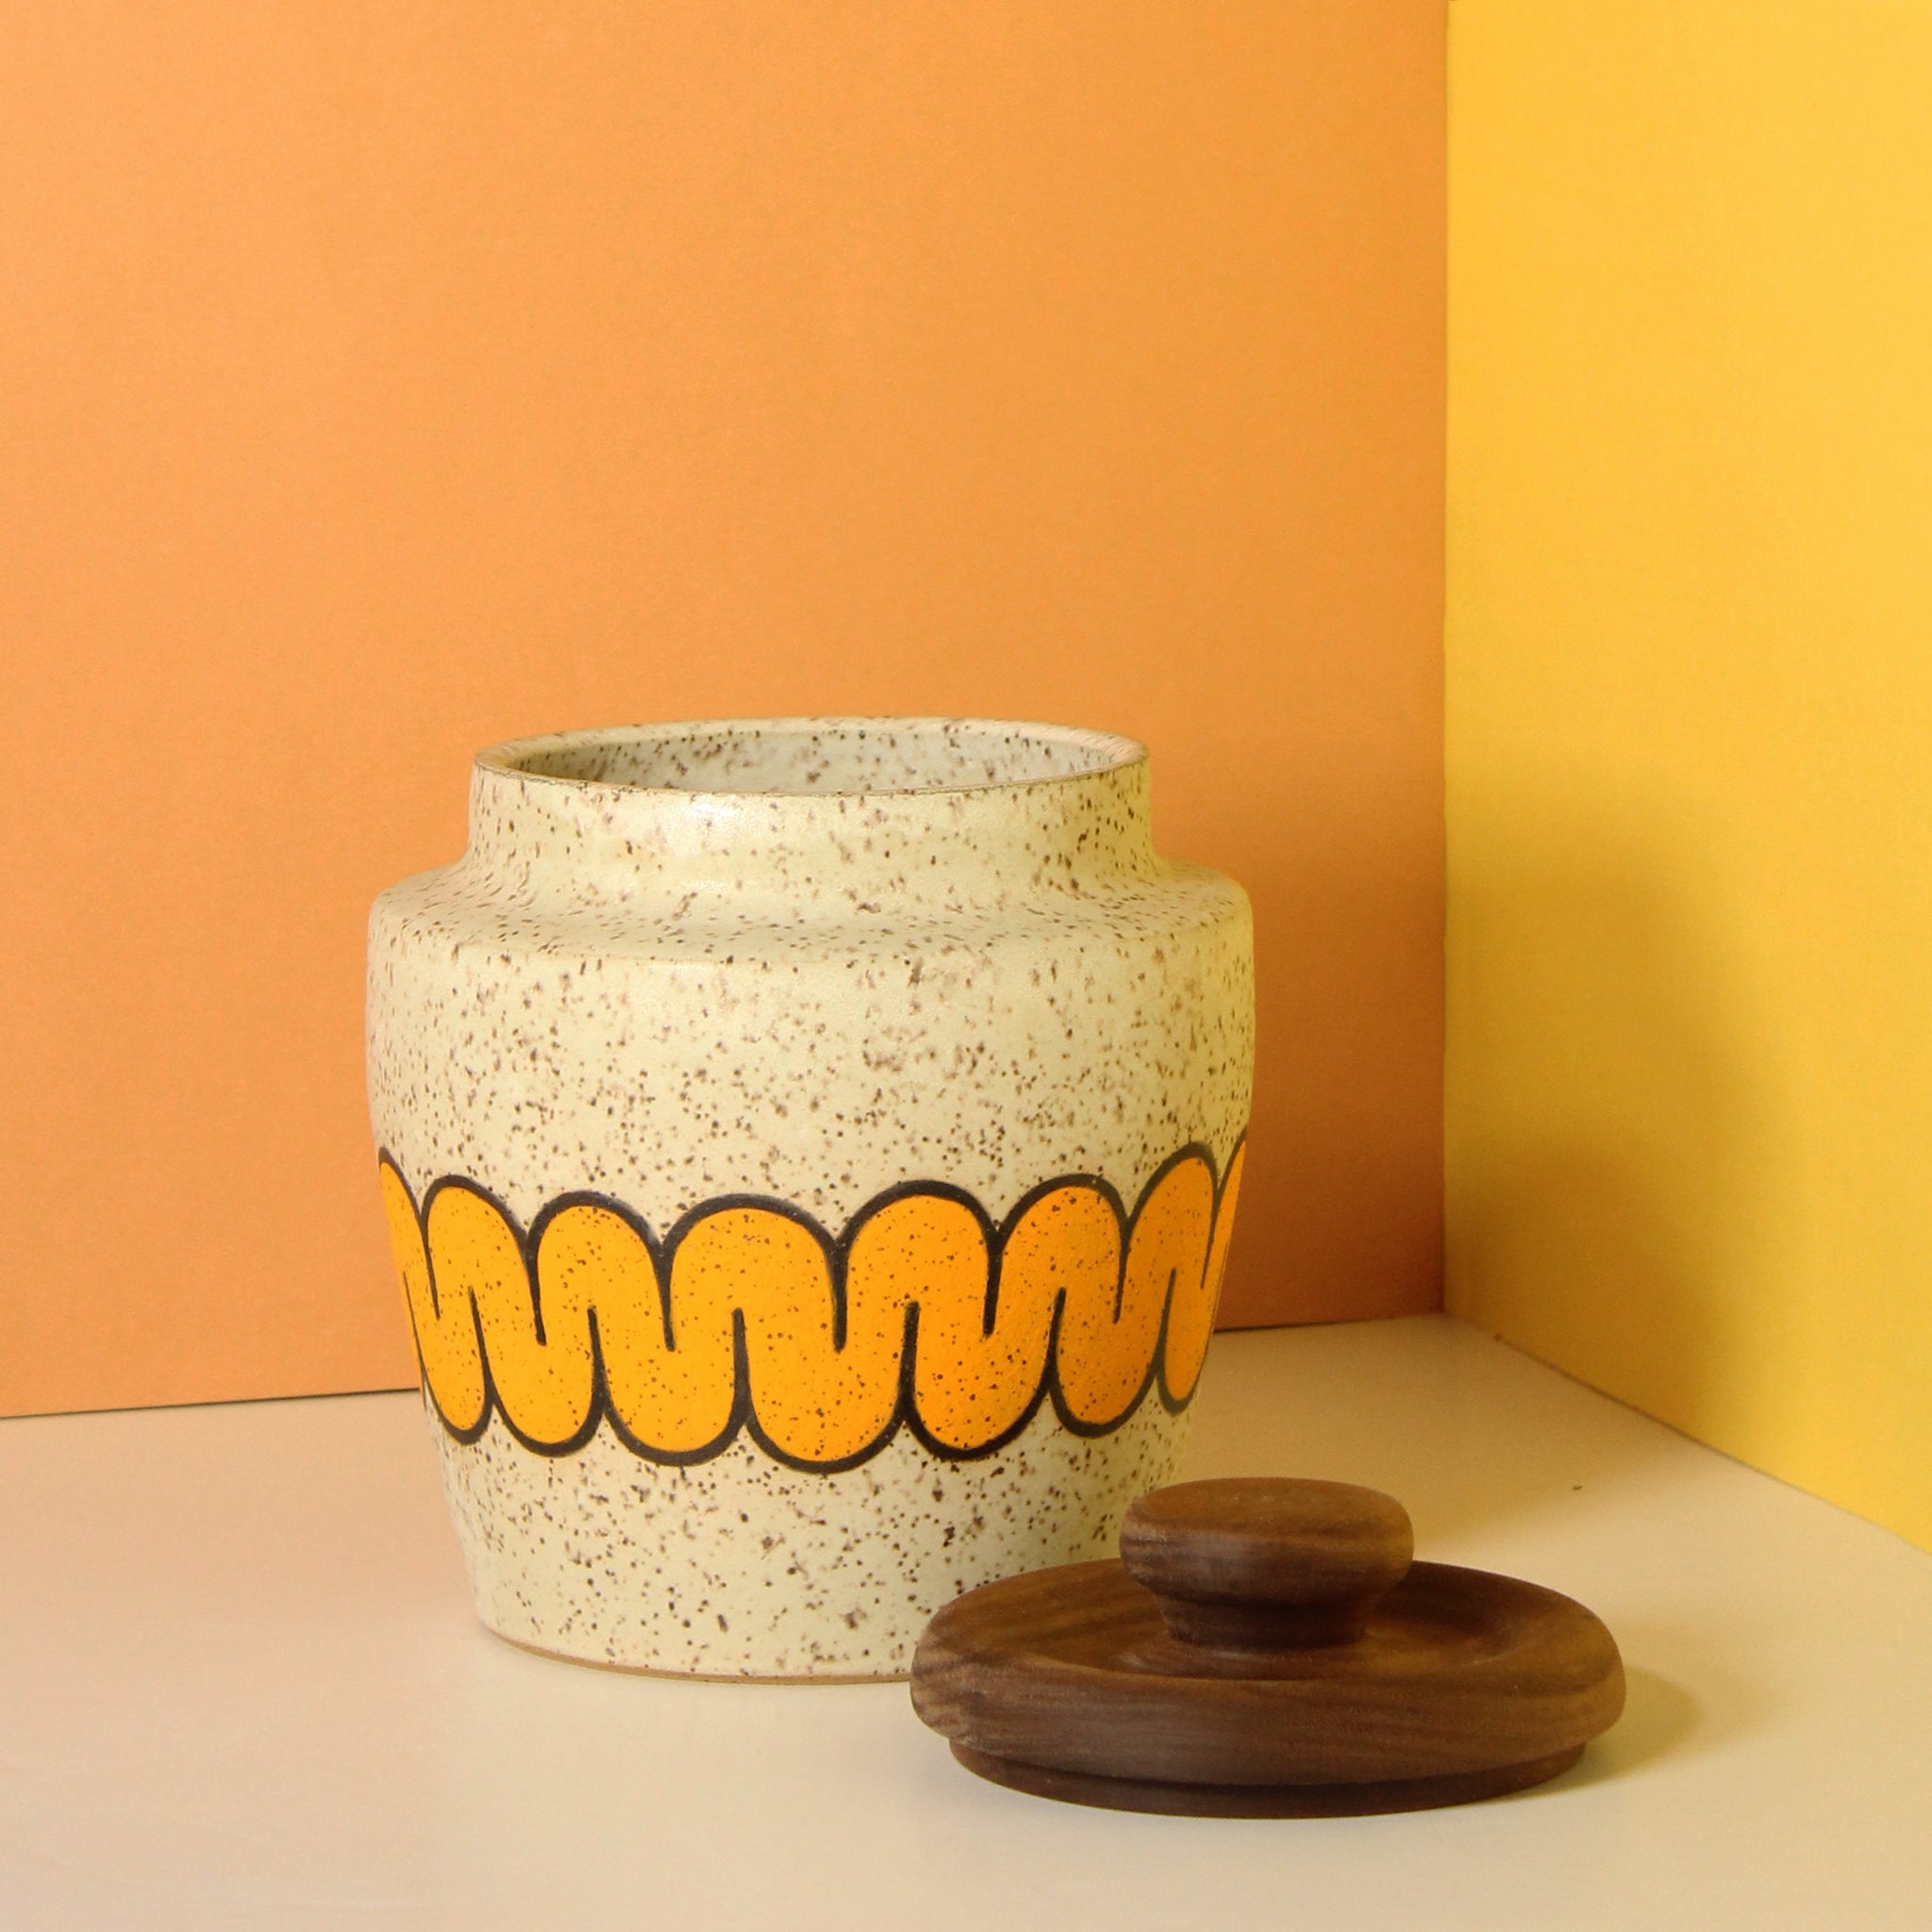 Glazed Stoneware Jar with Wave Pattern